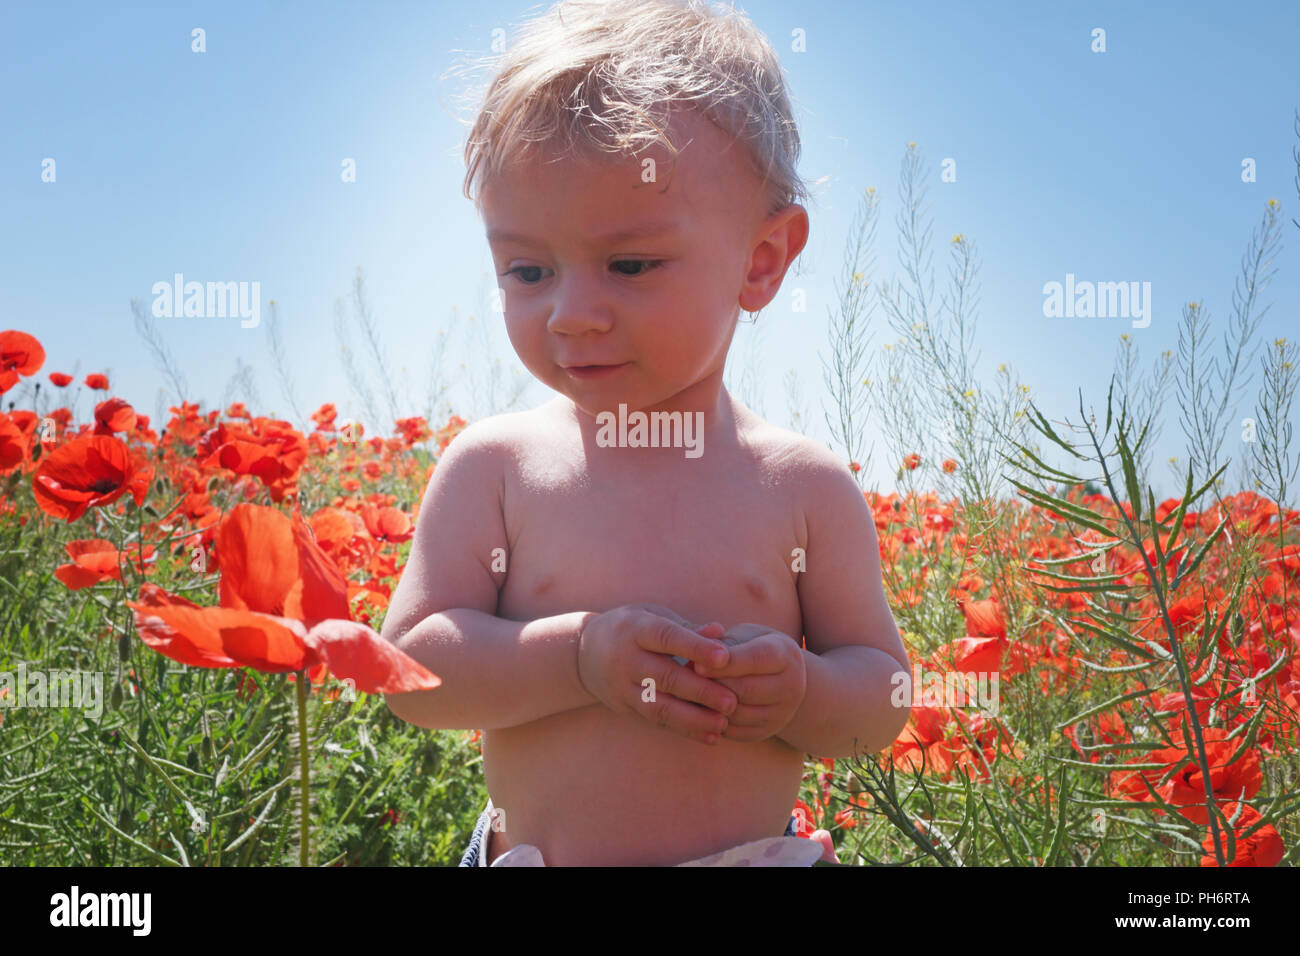 little baby boy posing on poppy fields Stock Photo